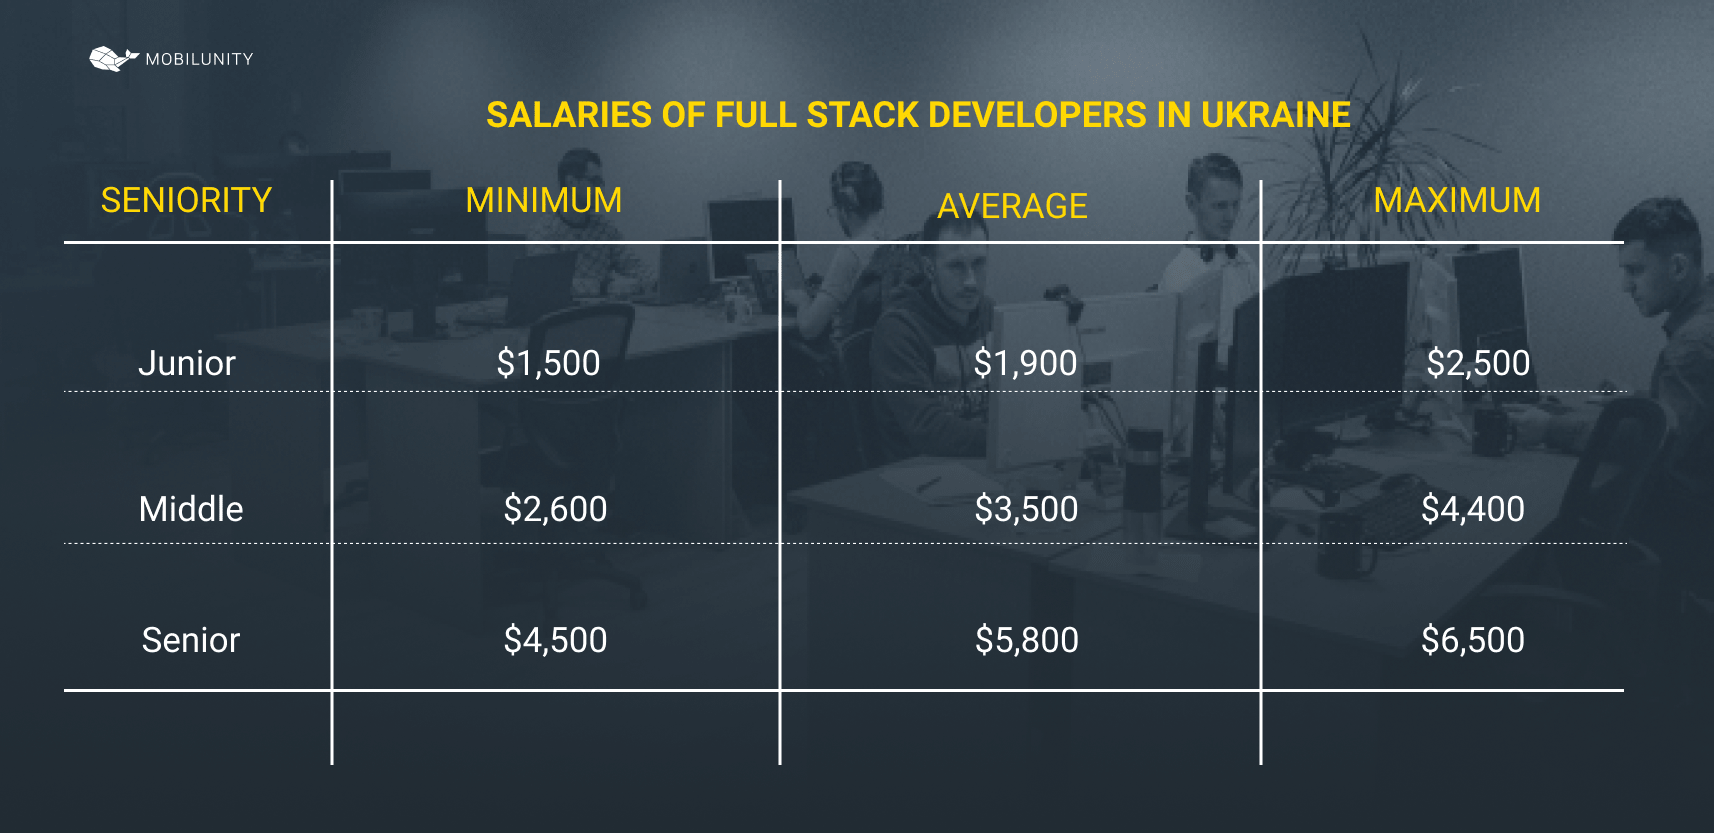 Full stack developer salary in Ukraine